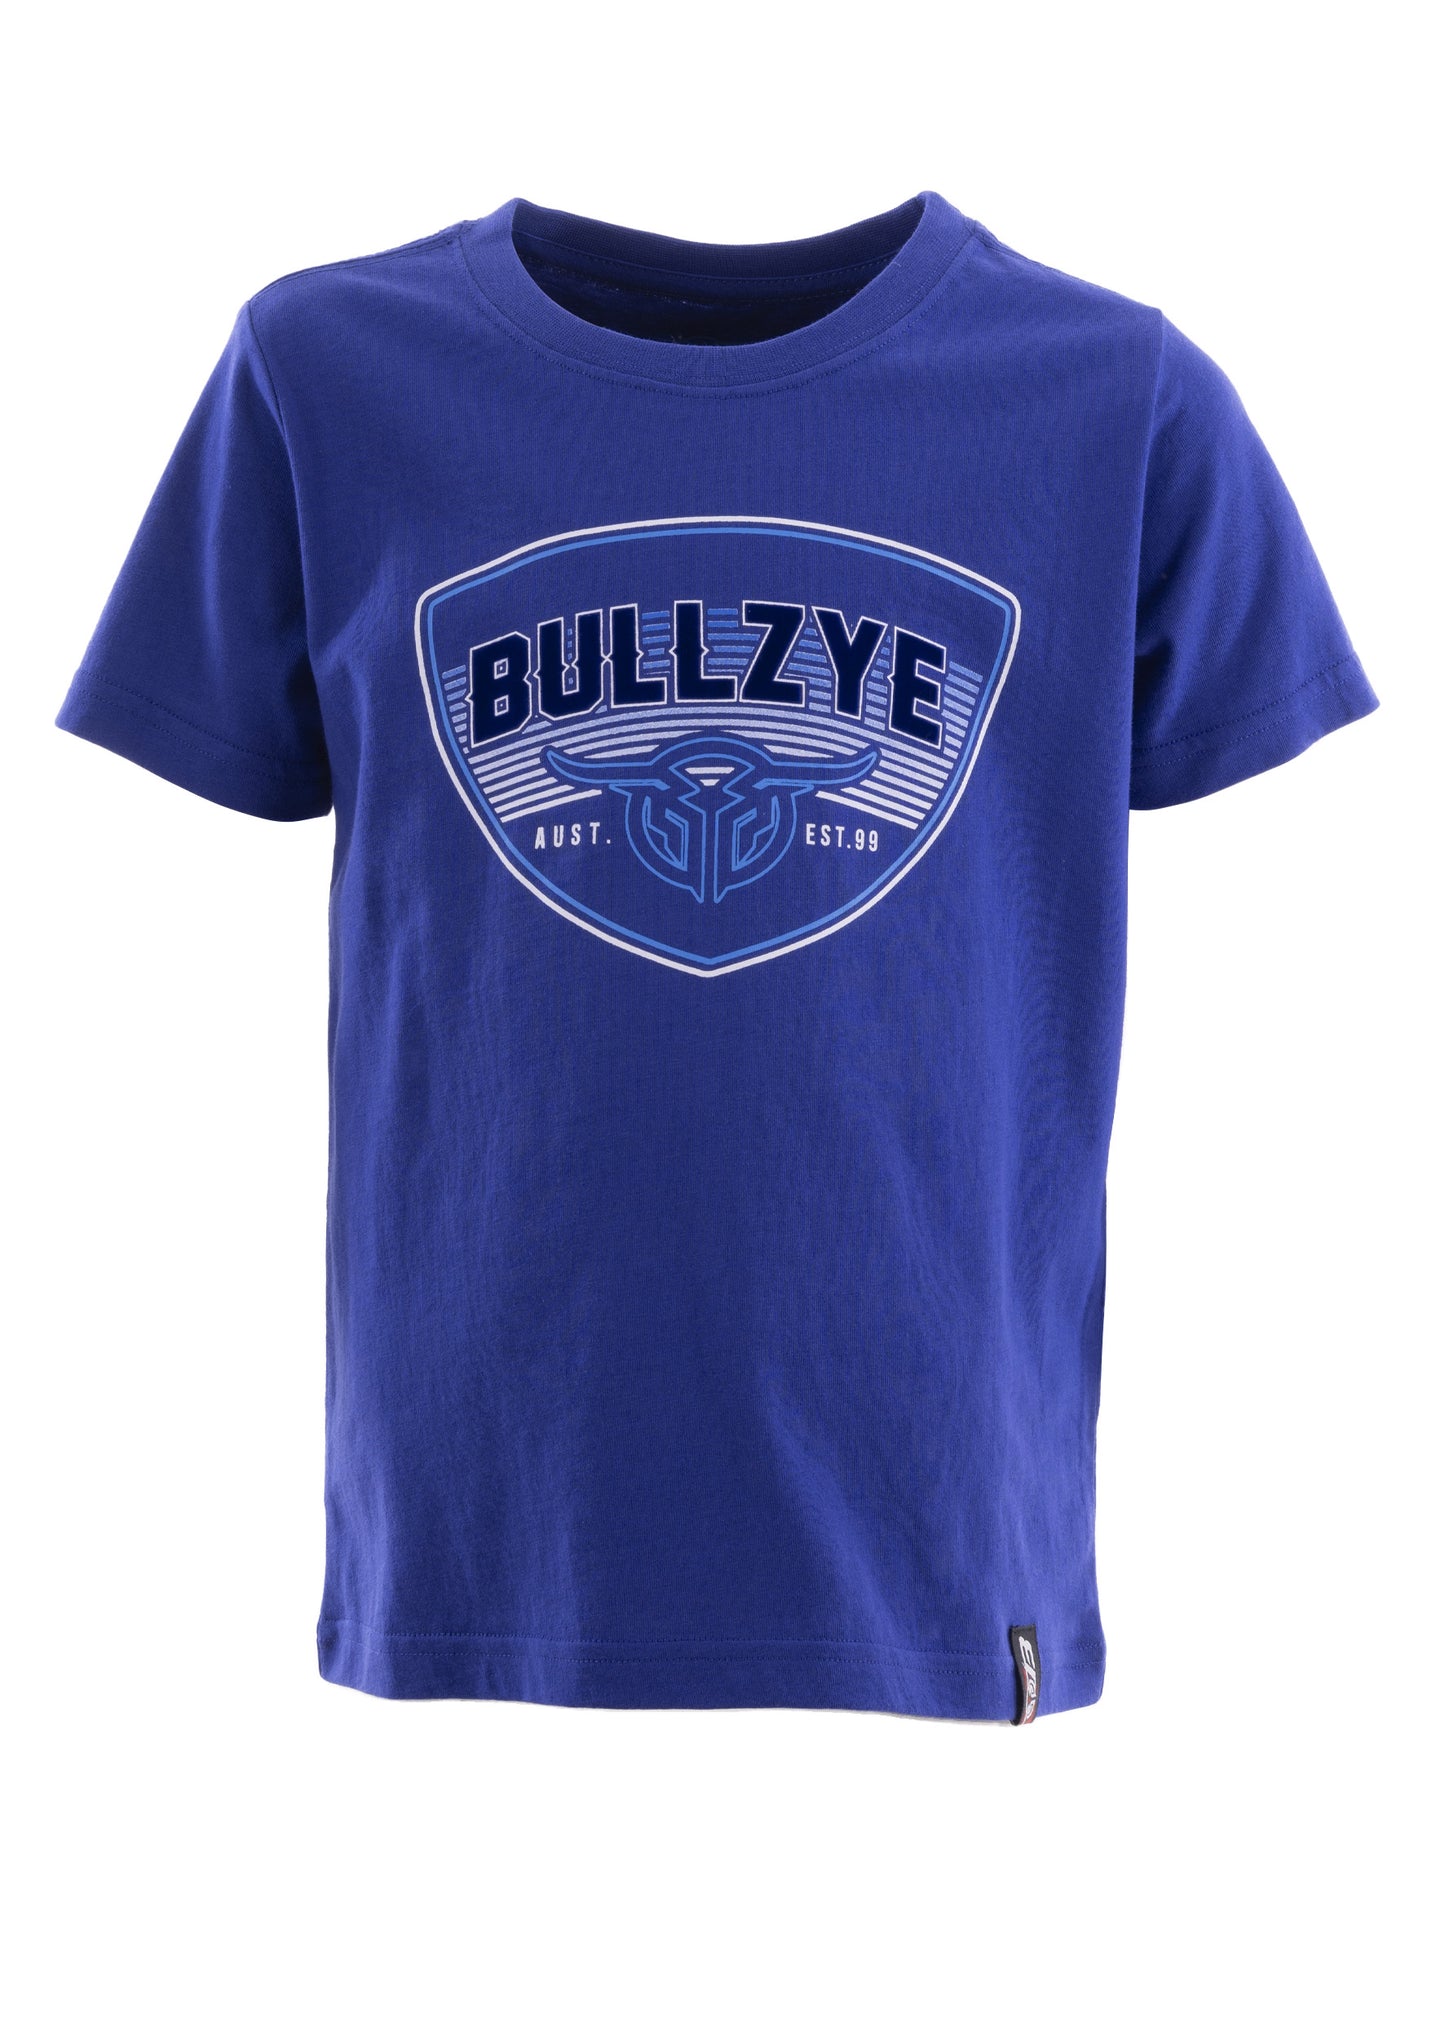 Bullzye Boys Emblem Short Sleeve Tee - Royal Blue - B2S3503181